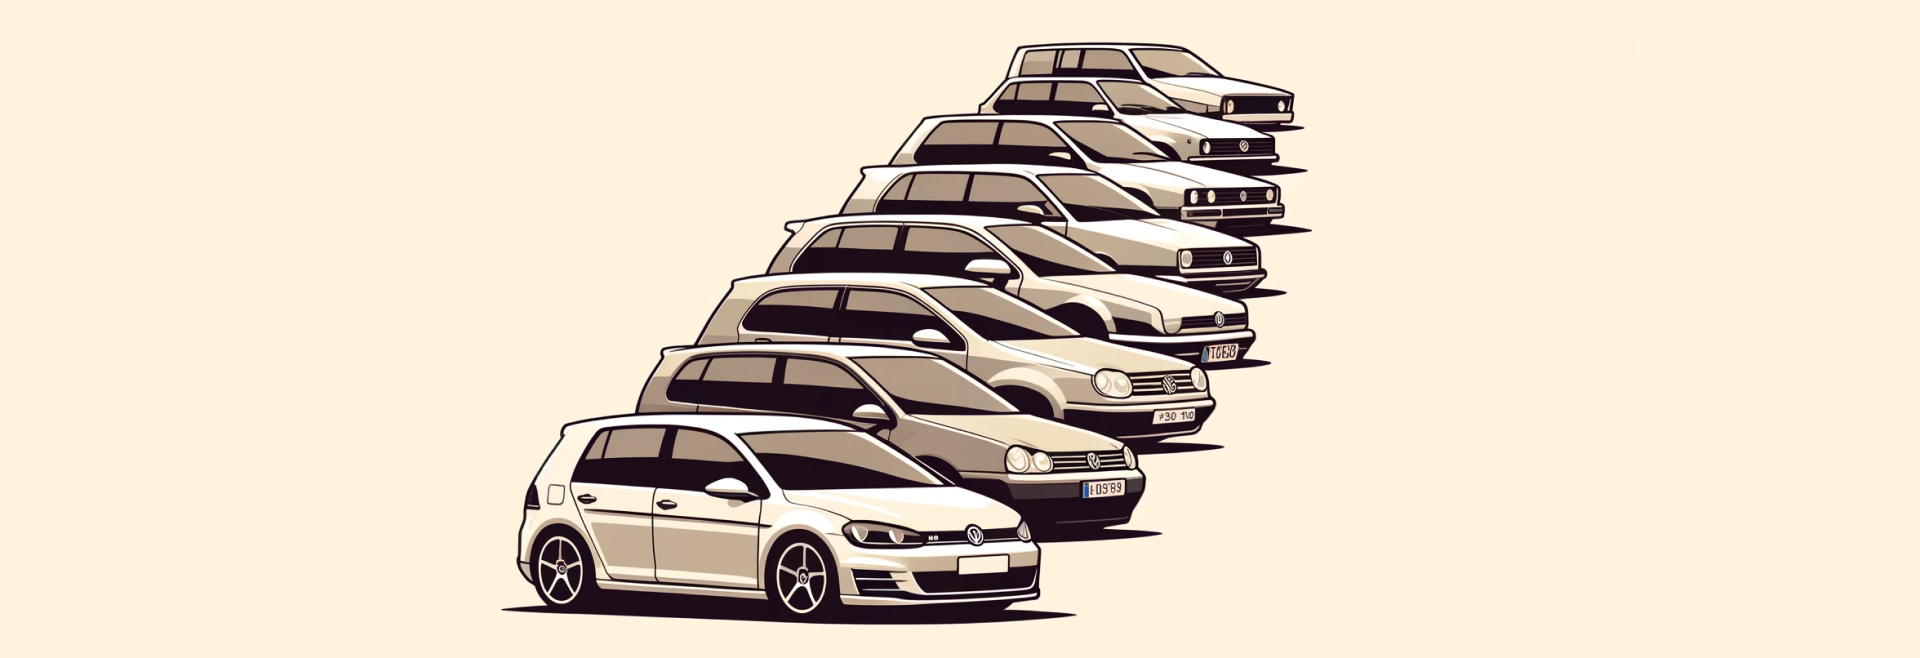 Un demi-siècle d’innovation : célébrons les 50 ans de la Volkswagen Golf